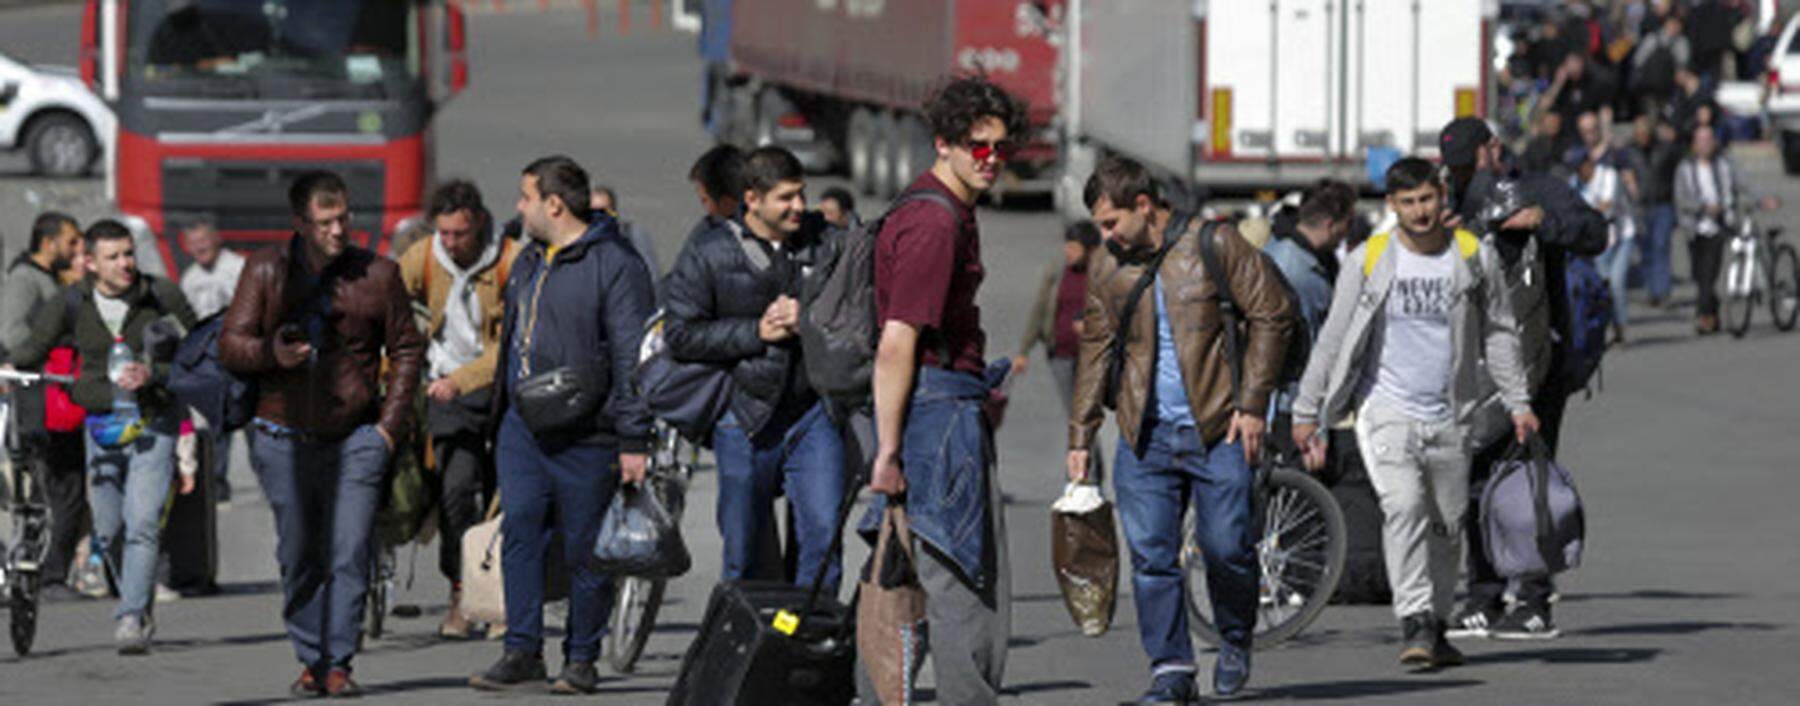 Junge Russen fliehen über den Grenzübergang Werchnyj Lars nach Georgien. Der Einberufung entkommen, werden sie vor allem der Wirtschaft fehlen.